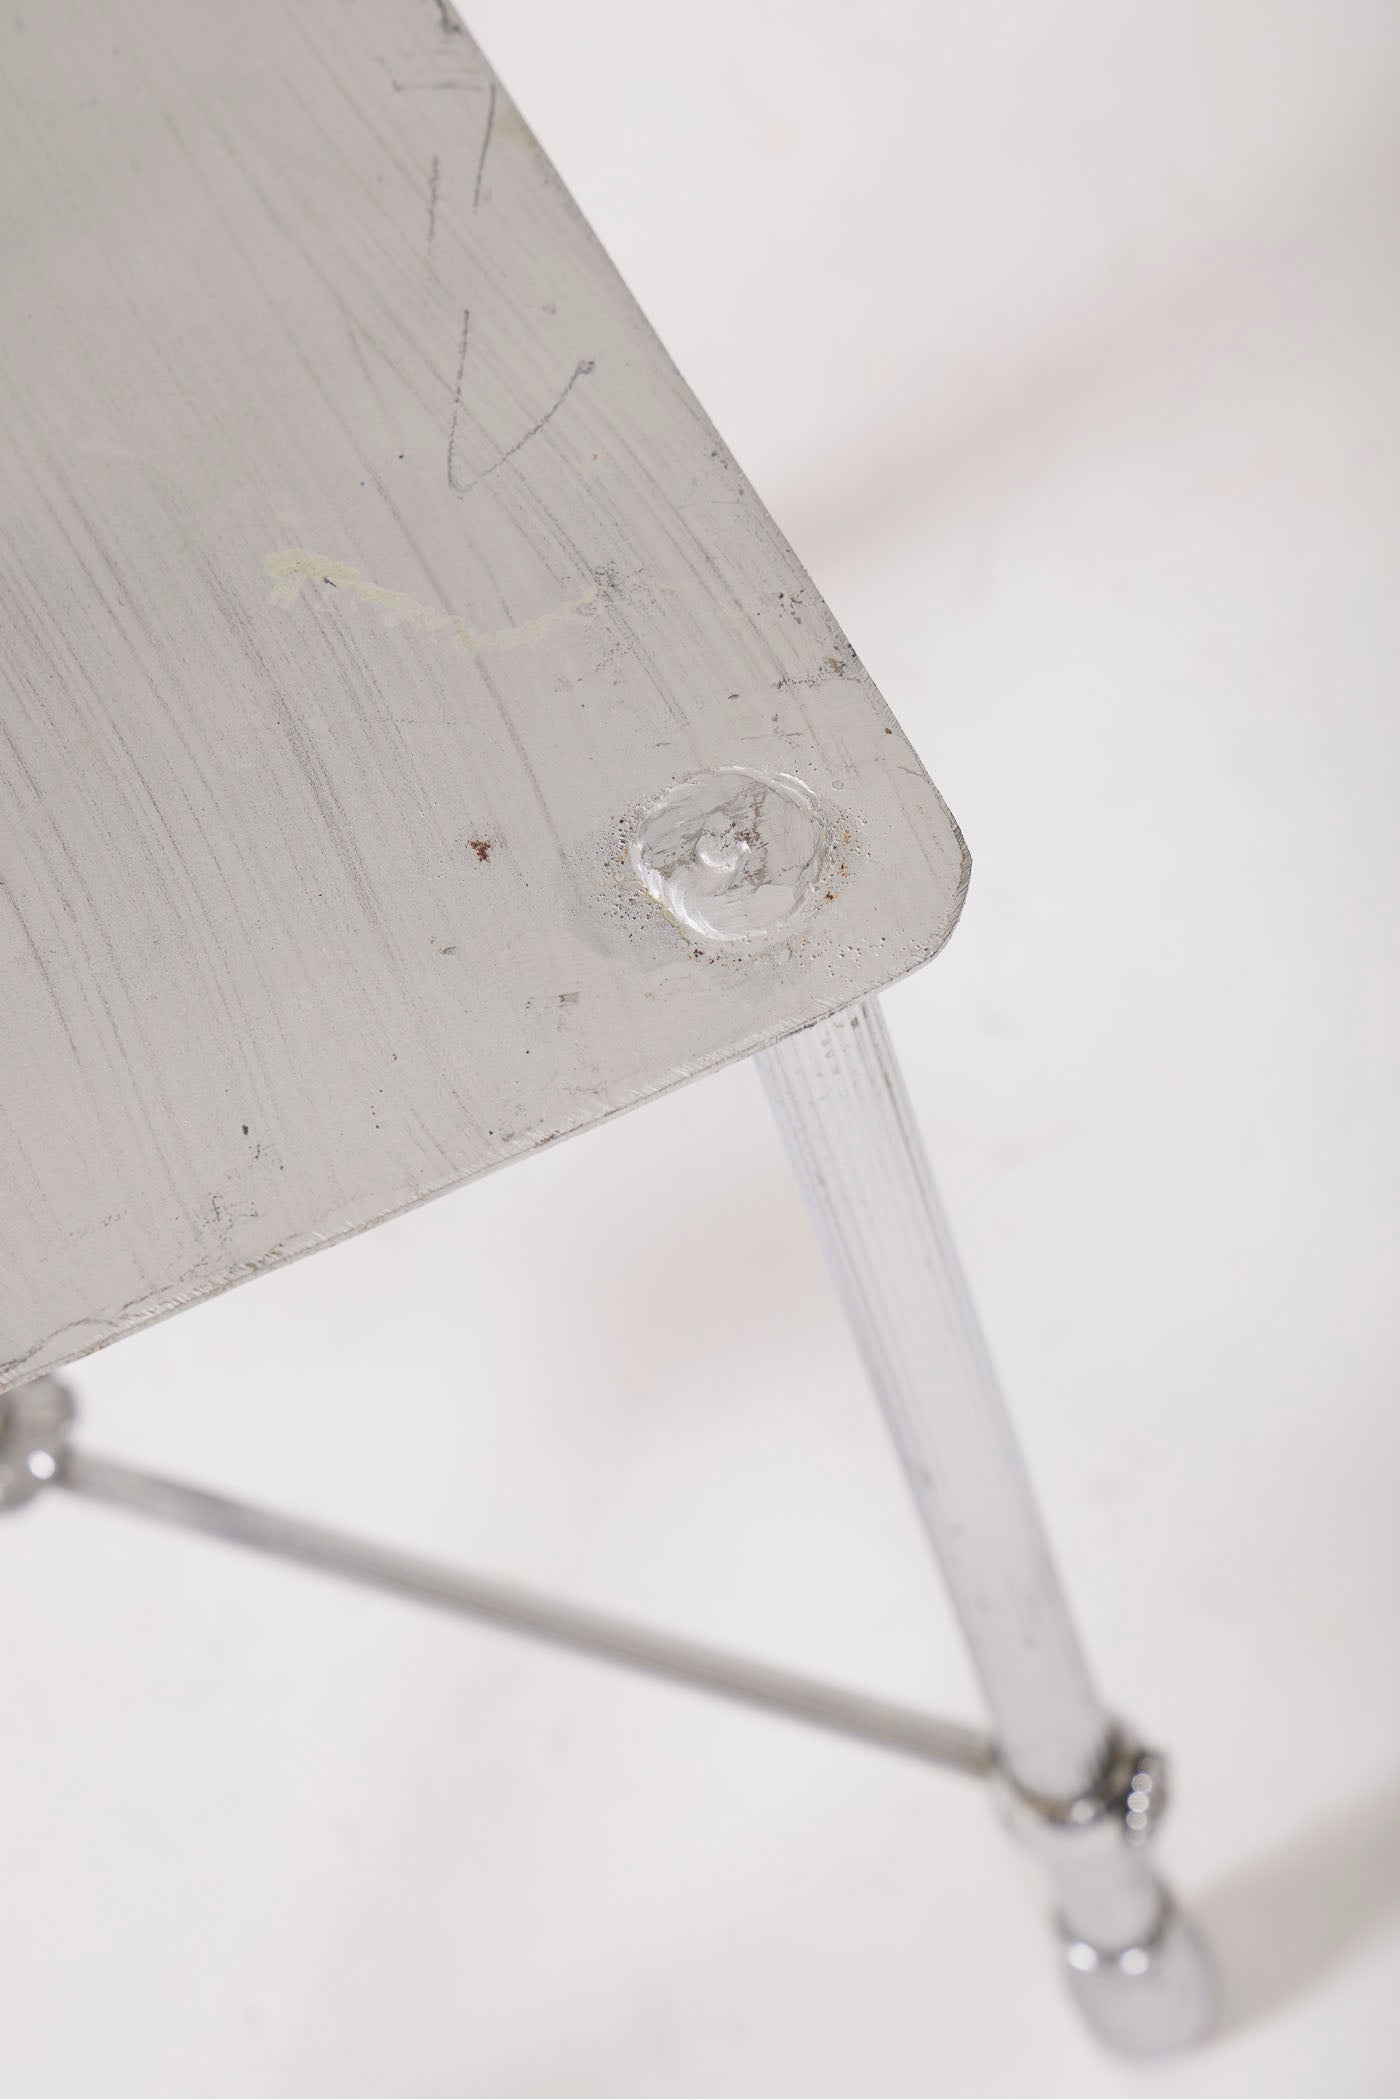 Tabouret carré en métal de couleur argenté, en bon état général. Quelques traces d'usure mineures sont à noter, ce qui ajoute un caractère authentique à ce meuble.